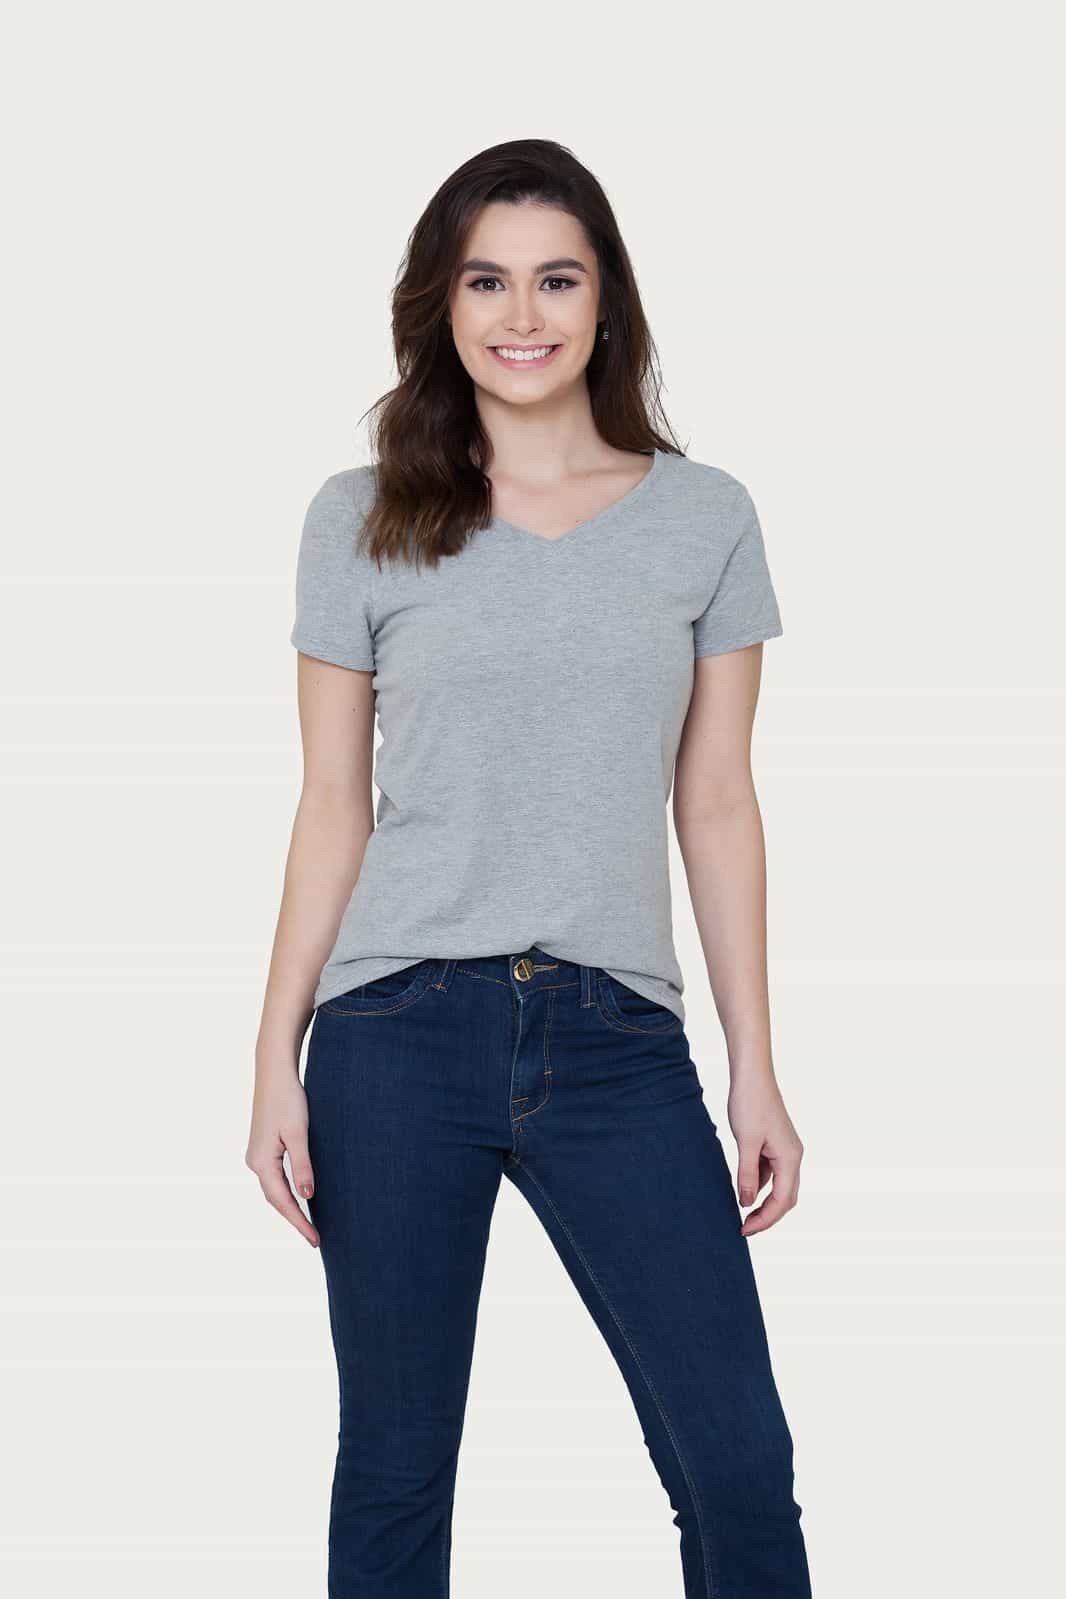 Camiseta Básica Feminina Algodão Premium Slim Fit Decote V Cinza Mescla Médio